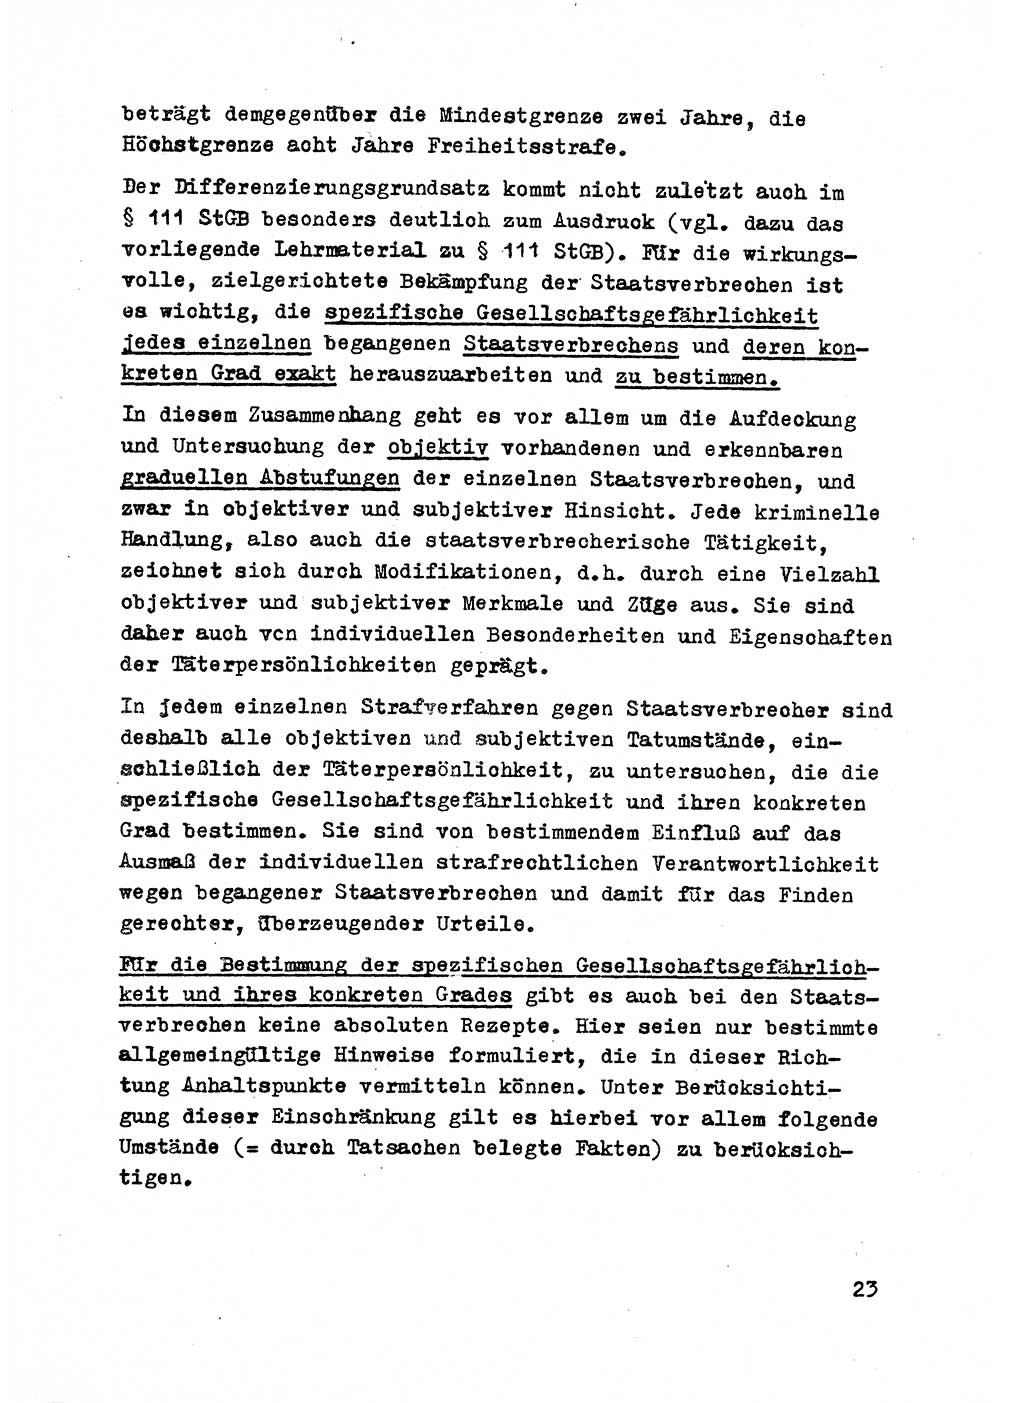 Strafrecht der DDR (Deutsche Demokratische Republik), Besonderer Teil, Lehrmaterial, Heft 2 1969, Seite 23 (Strafr. DDR BT Lehrmat. H. 2 1969, S. 23)